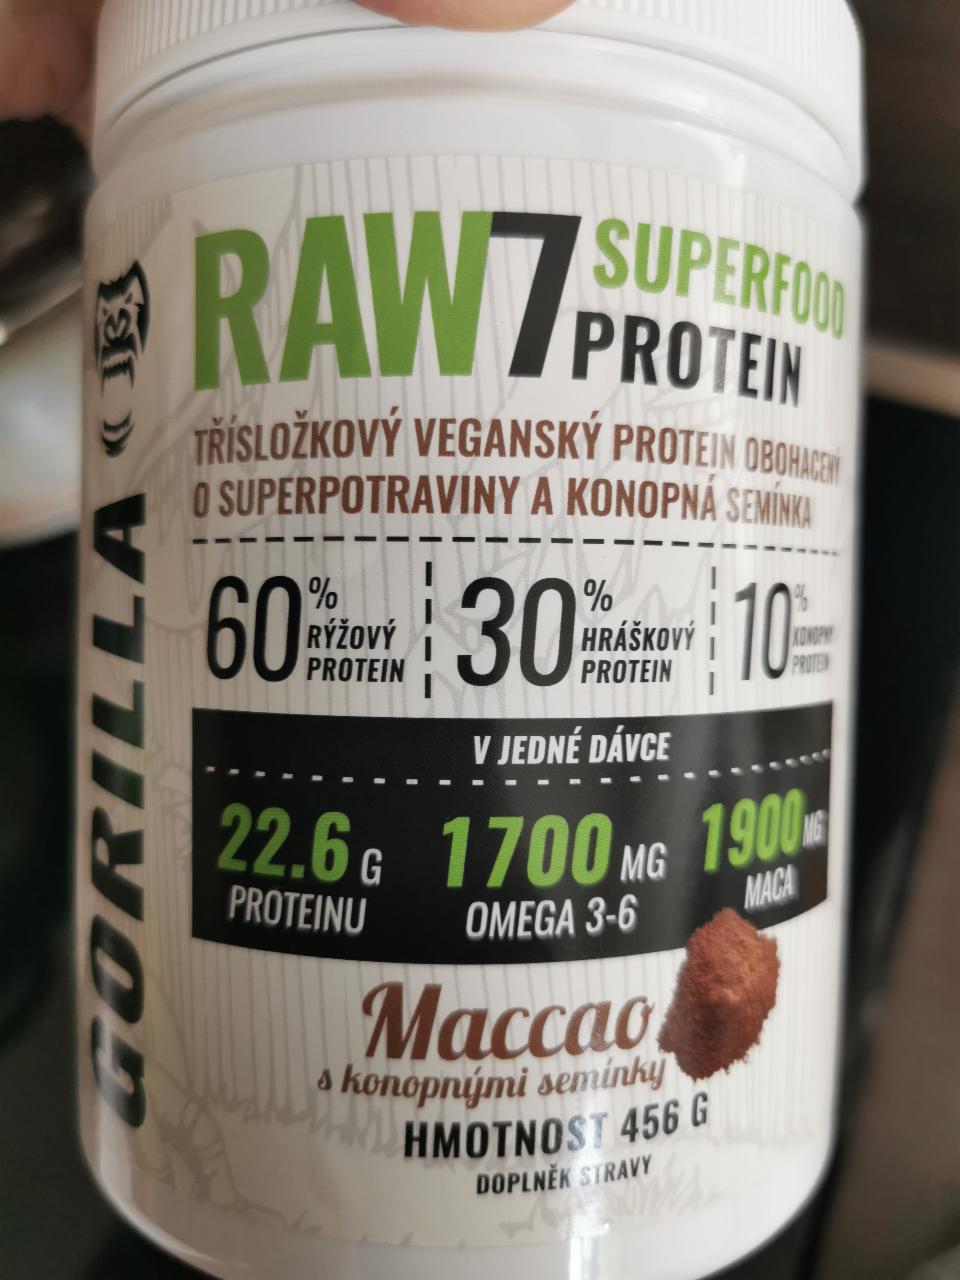 Fotografie - Gorilla RAW7 Superfood protein